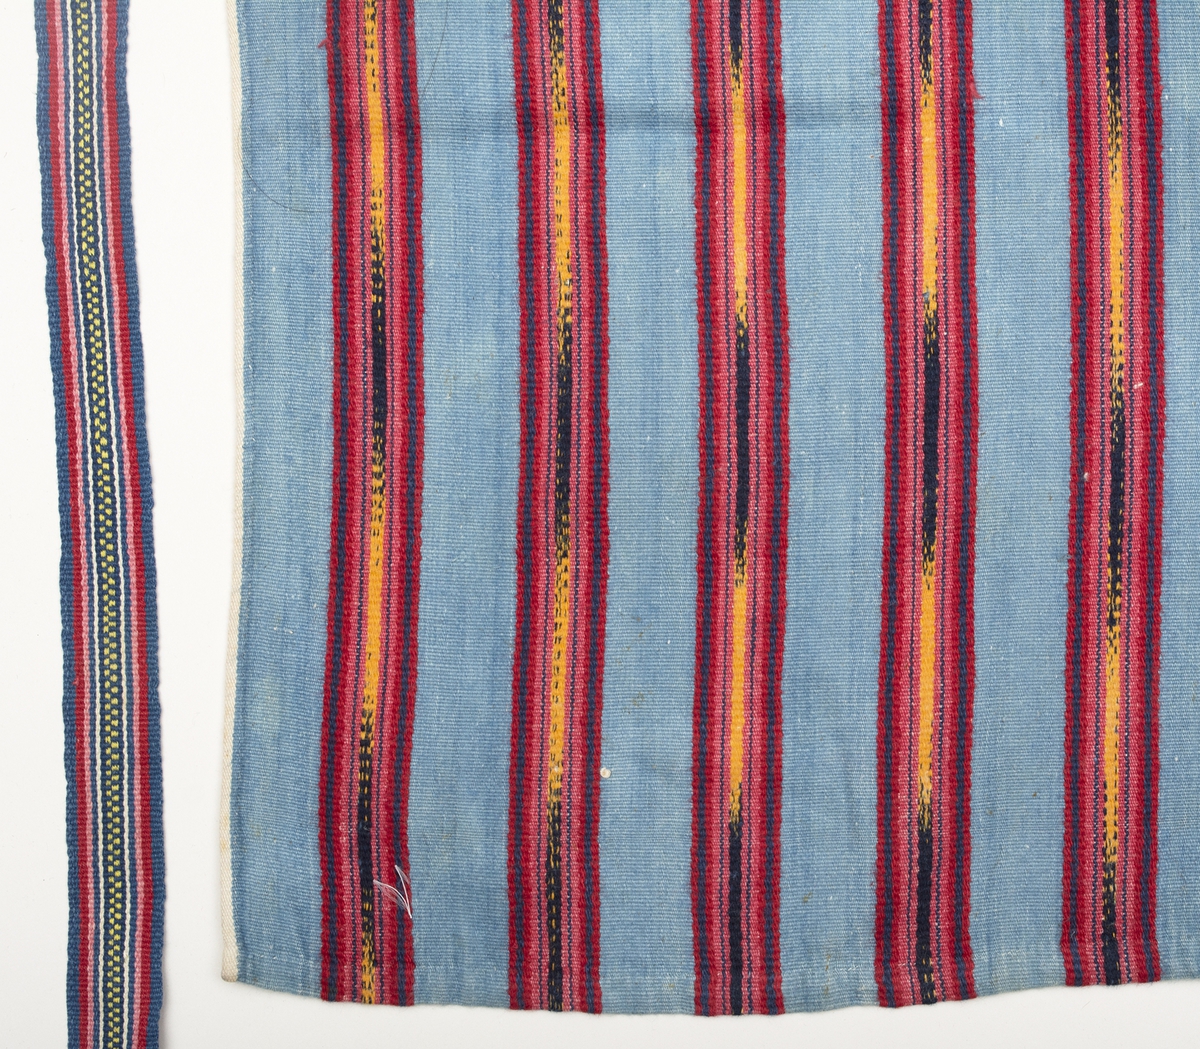 Midjeförkläde med ljusblå botten och breda jämt fördelade ränder i rött, gult och mörkblått, där de gula och mörkblå är flamgarnsfärgat. Ytterst längs långsidorna löper en smal vit kant som fortsätter på baksidan i den 4 mm breda sidfållen. Fåll nertill ca 10 mm.
Linning av ett tyg liknande förklädets, bredd 15 mm, dubbelvikt över förklädeskanten. I sidorna är 1150 mm långa handvävda, mönstrade knytband fastsydda.